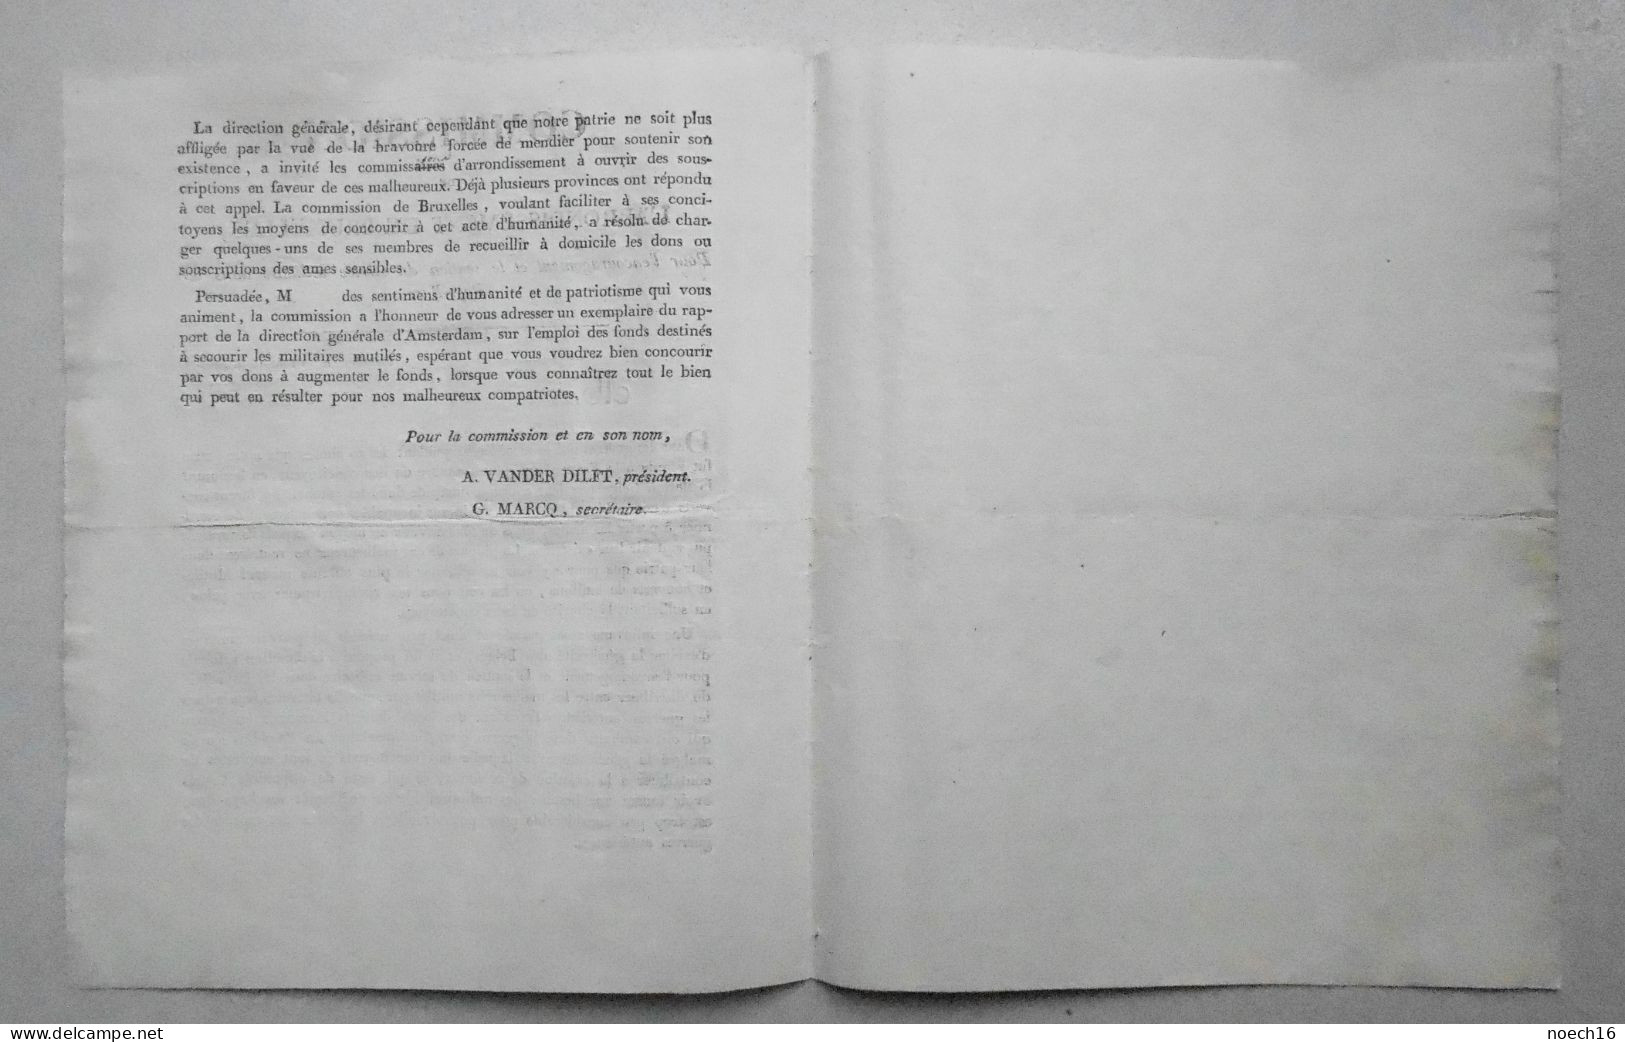 1820 Commission Pour L'encouragement Et Le Soutien Du Service Militaire Dans Les Pays-Bas - Arrondissement De Bruxelles - Documents